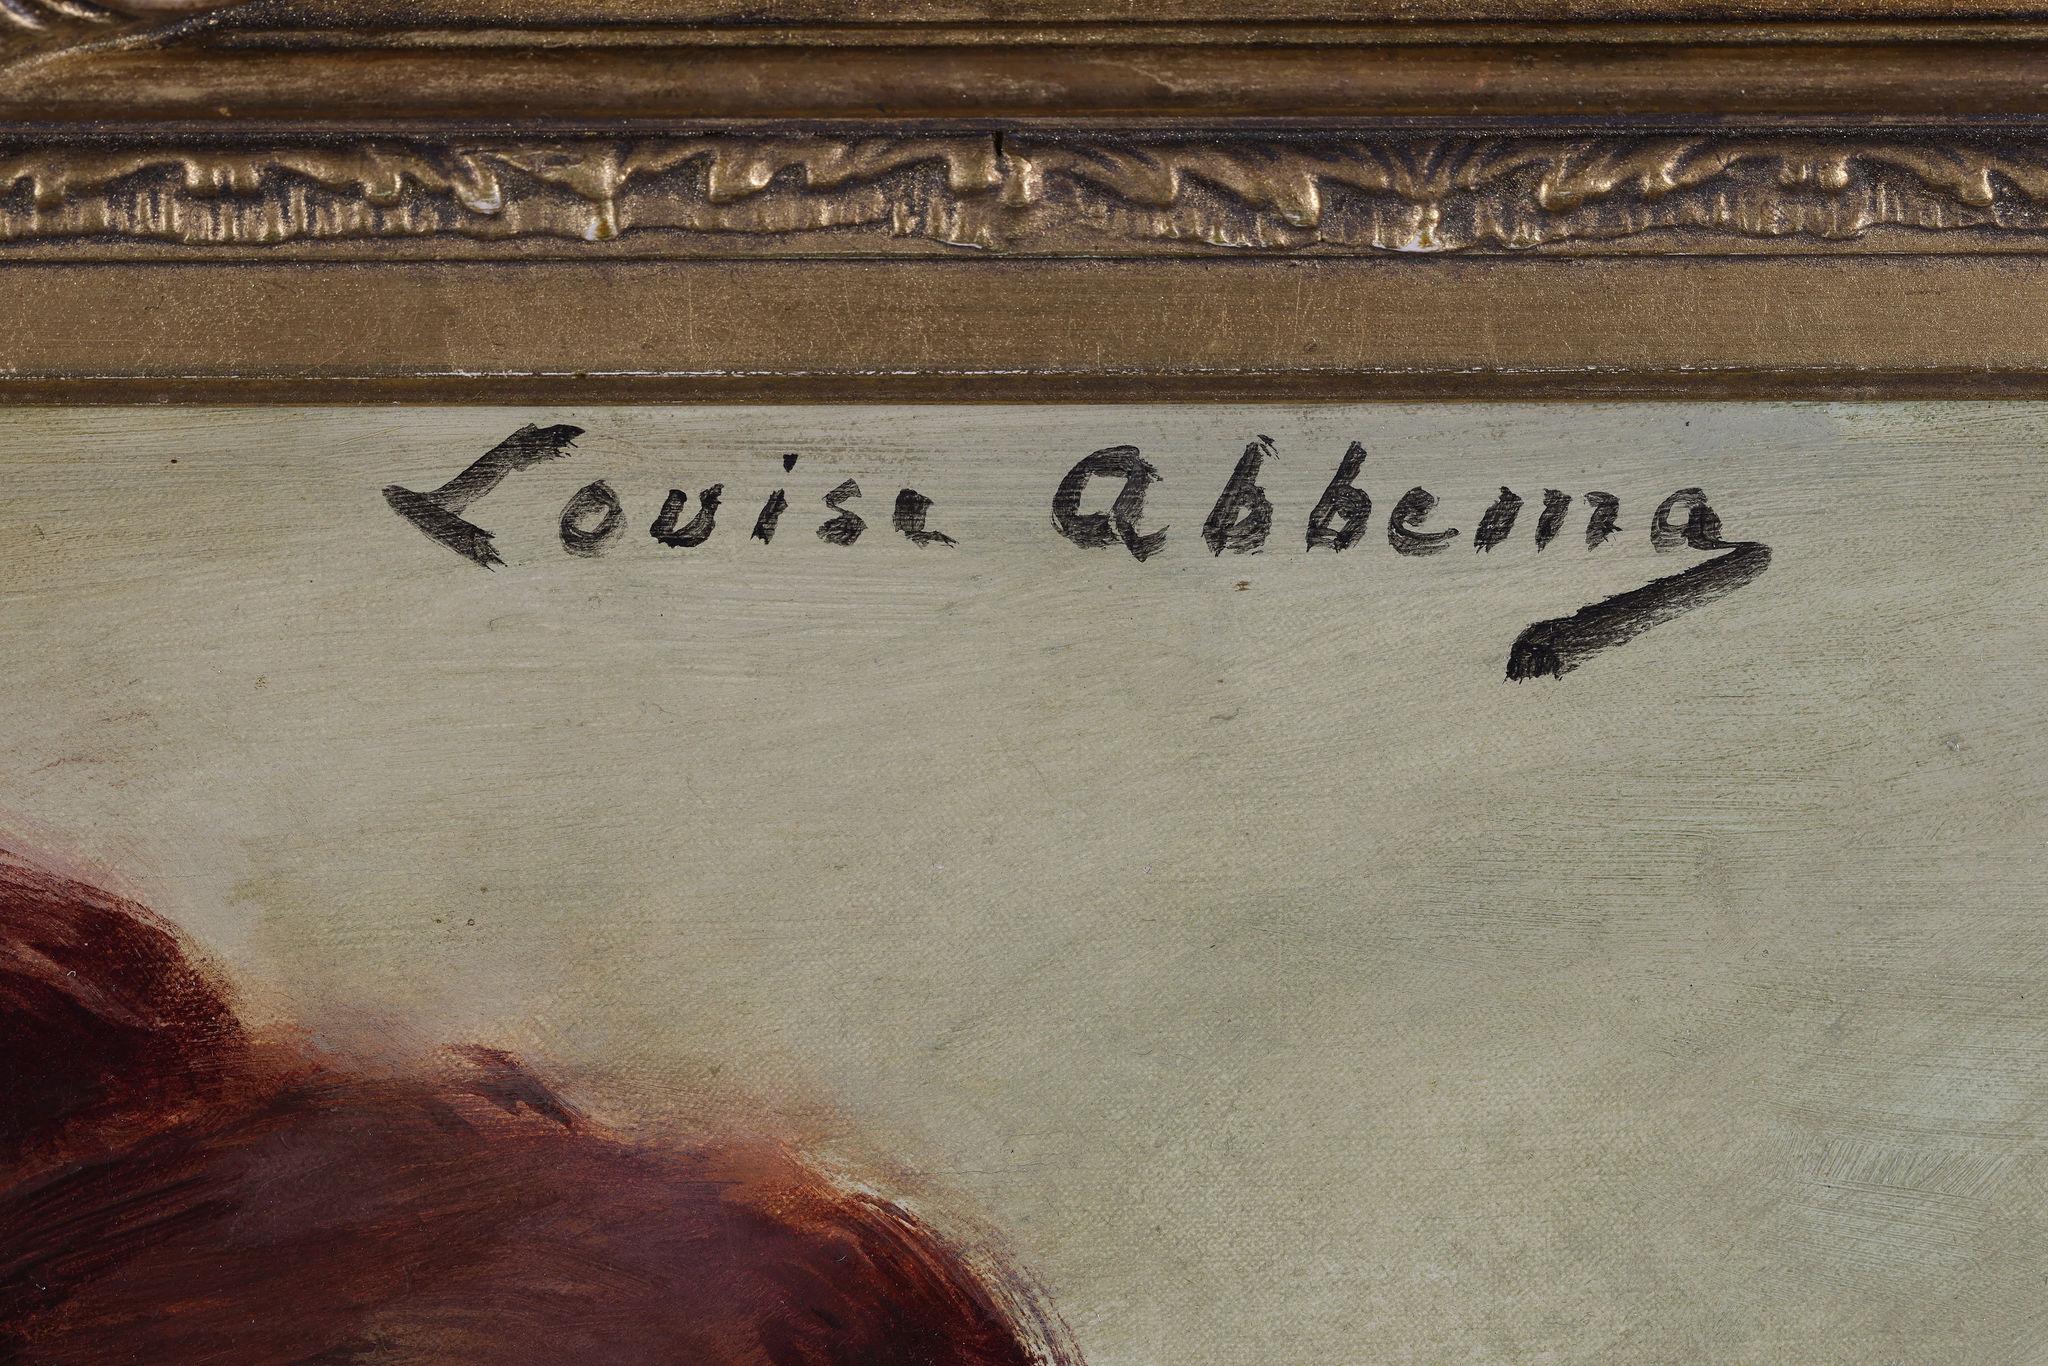 Louise Abbéma
1853-1927
Louise Abbéma (30. Oktober 1853[1] - 10. Juli 1927) war eine französische Malerin, Bildhauerin und Designerin der Belle Époque.
Abbéma wurde in Étampes, Essonne, geboren. 
Sie entstammt einer wohlhabenden Pariser